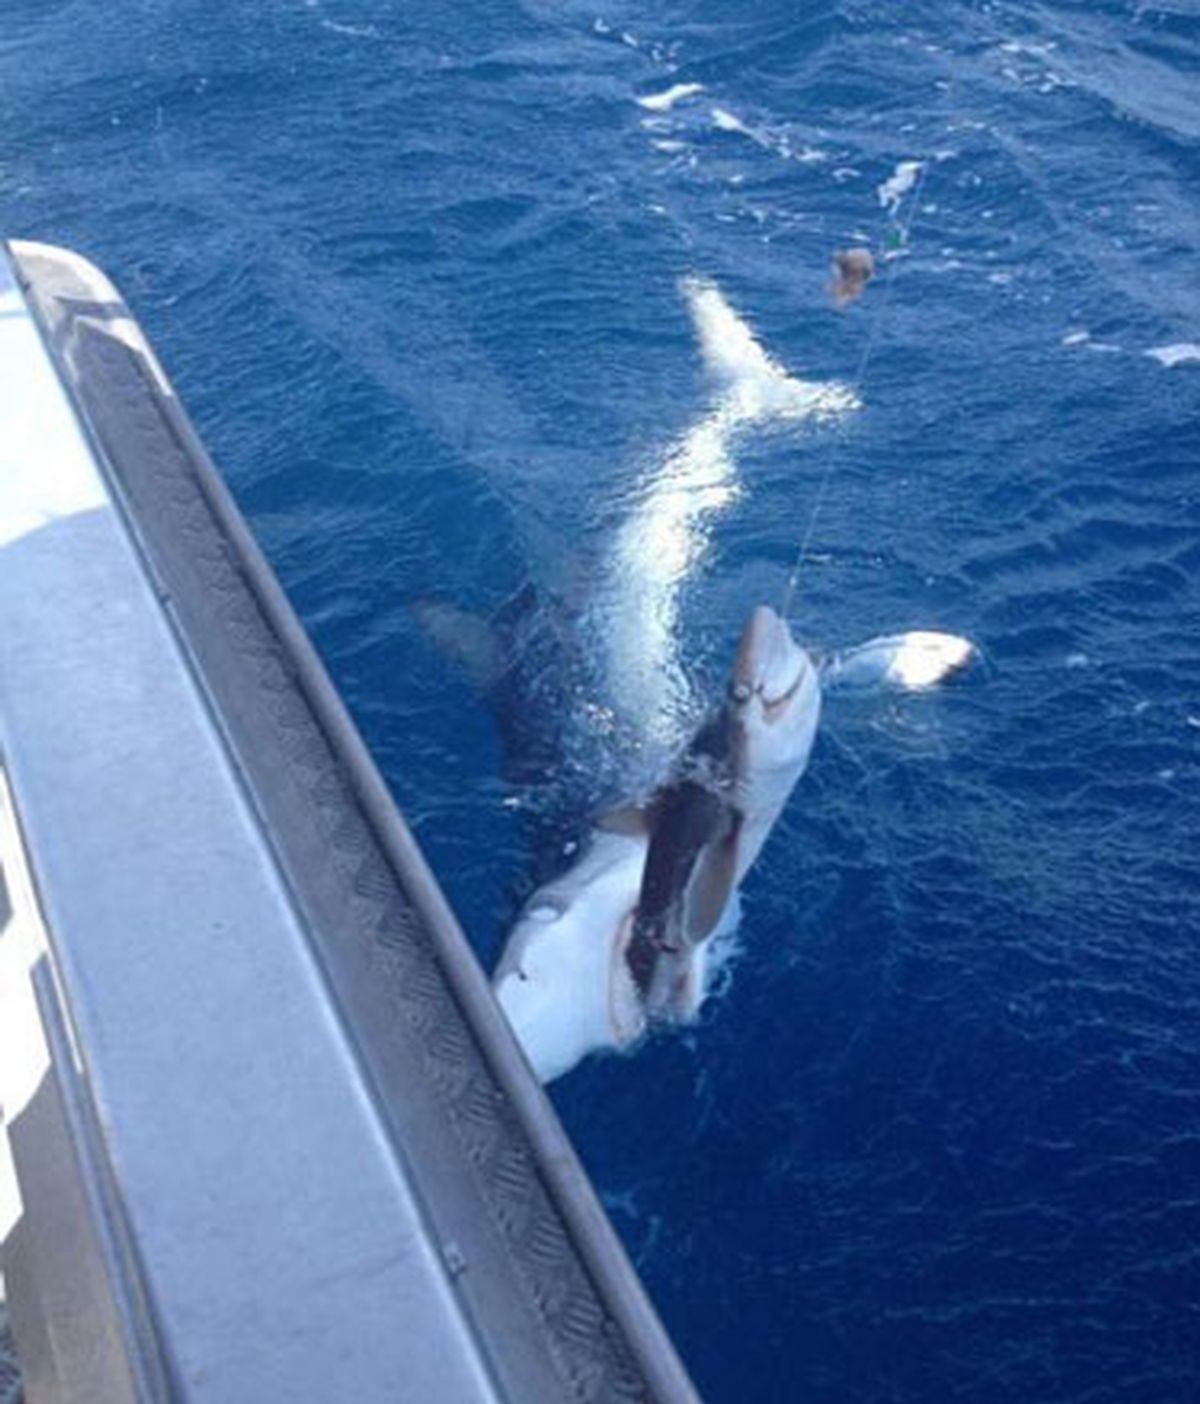 La lucha entre el pescador y el tiburón. Foto: Reddit